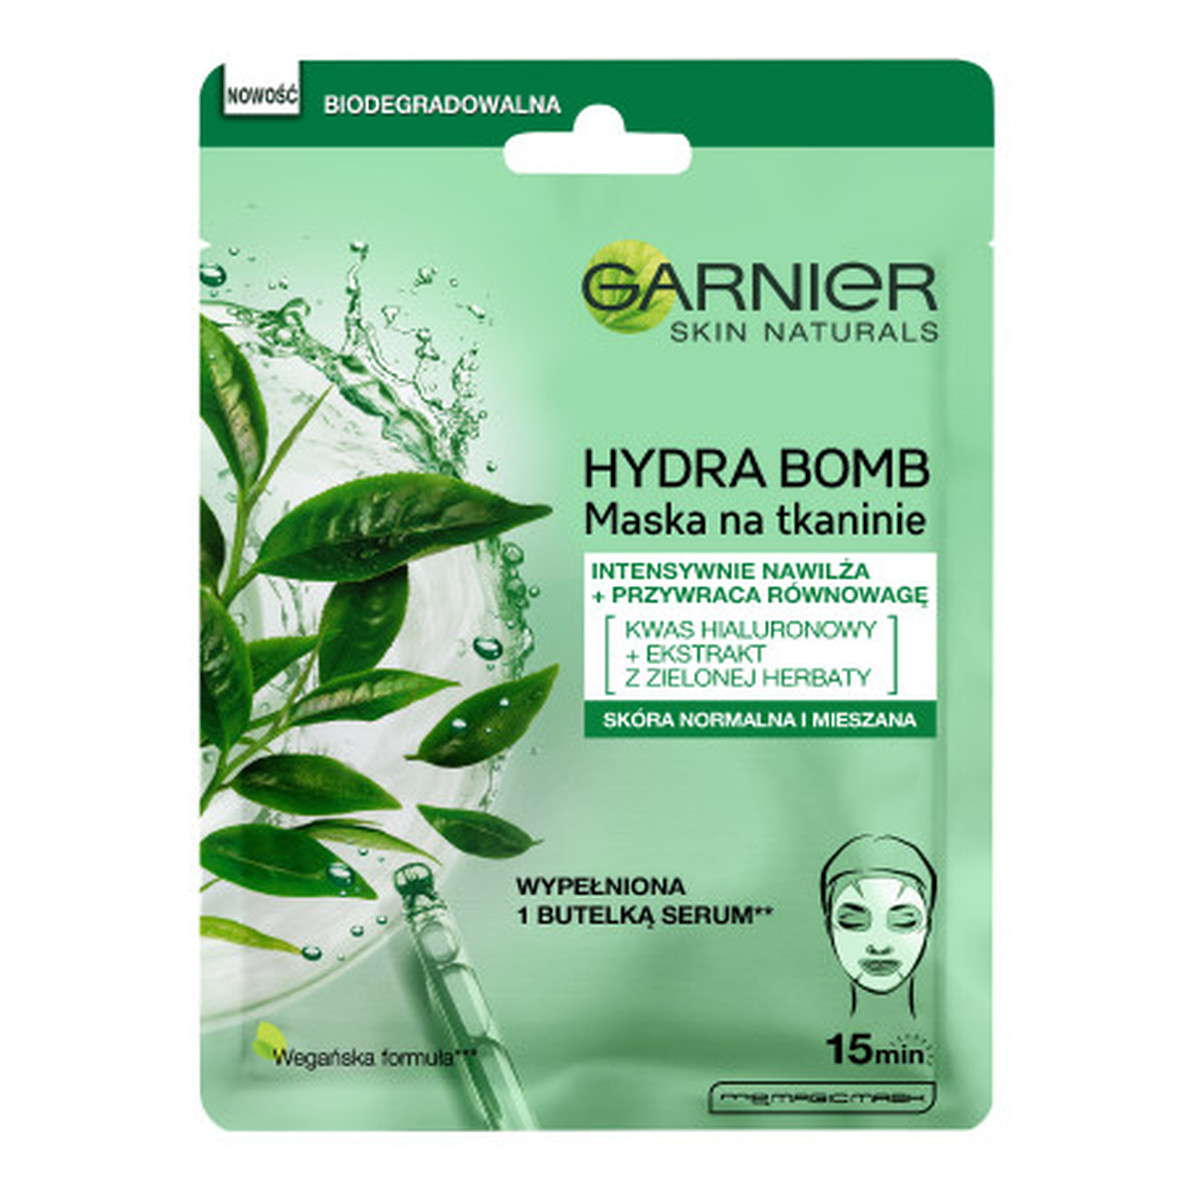 Garnier Hydra bomb przywracająca równowagę maska na tkaninie z ekstraktem z zielonej herbaty i kwasem hialuronowym 28g